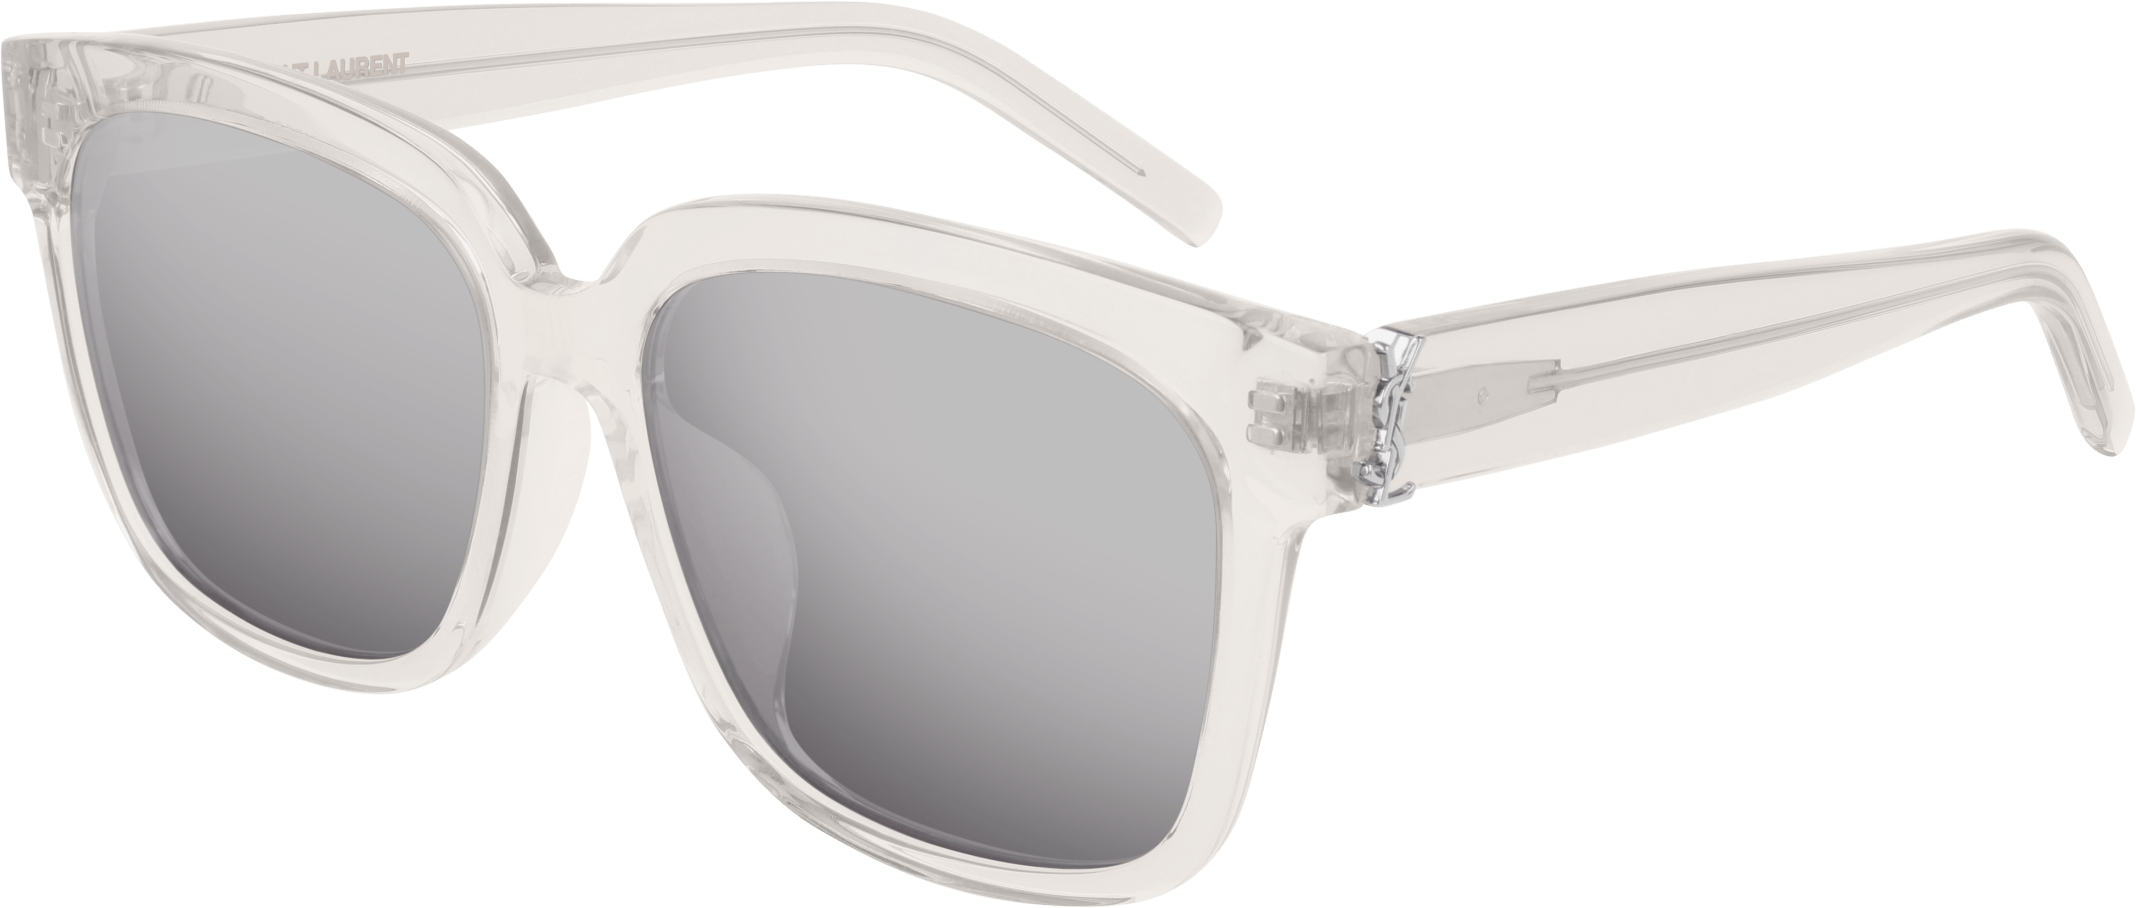 Saint Laurent SL M40 Square Sunglasses